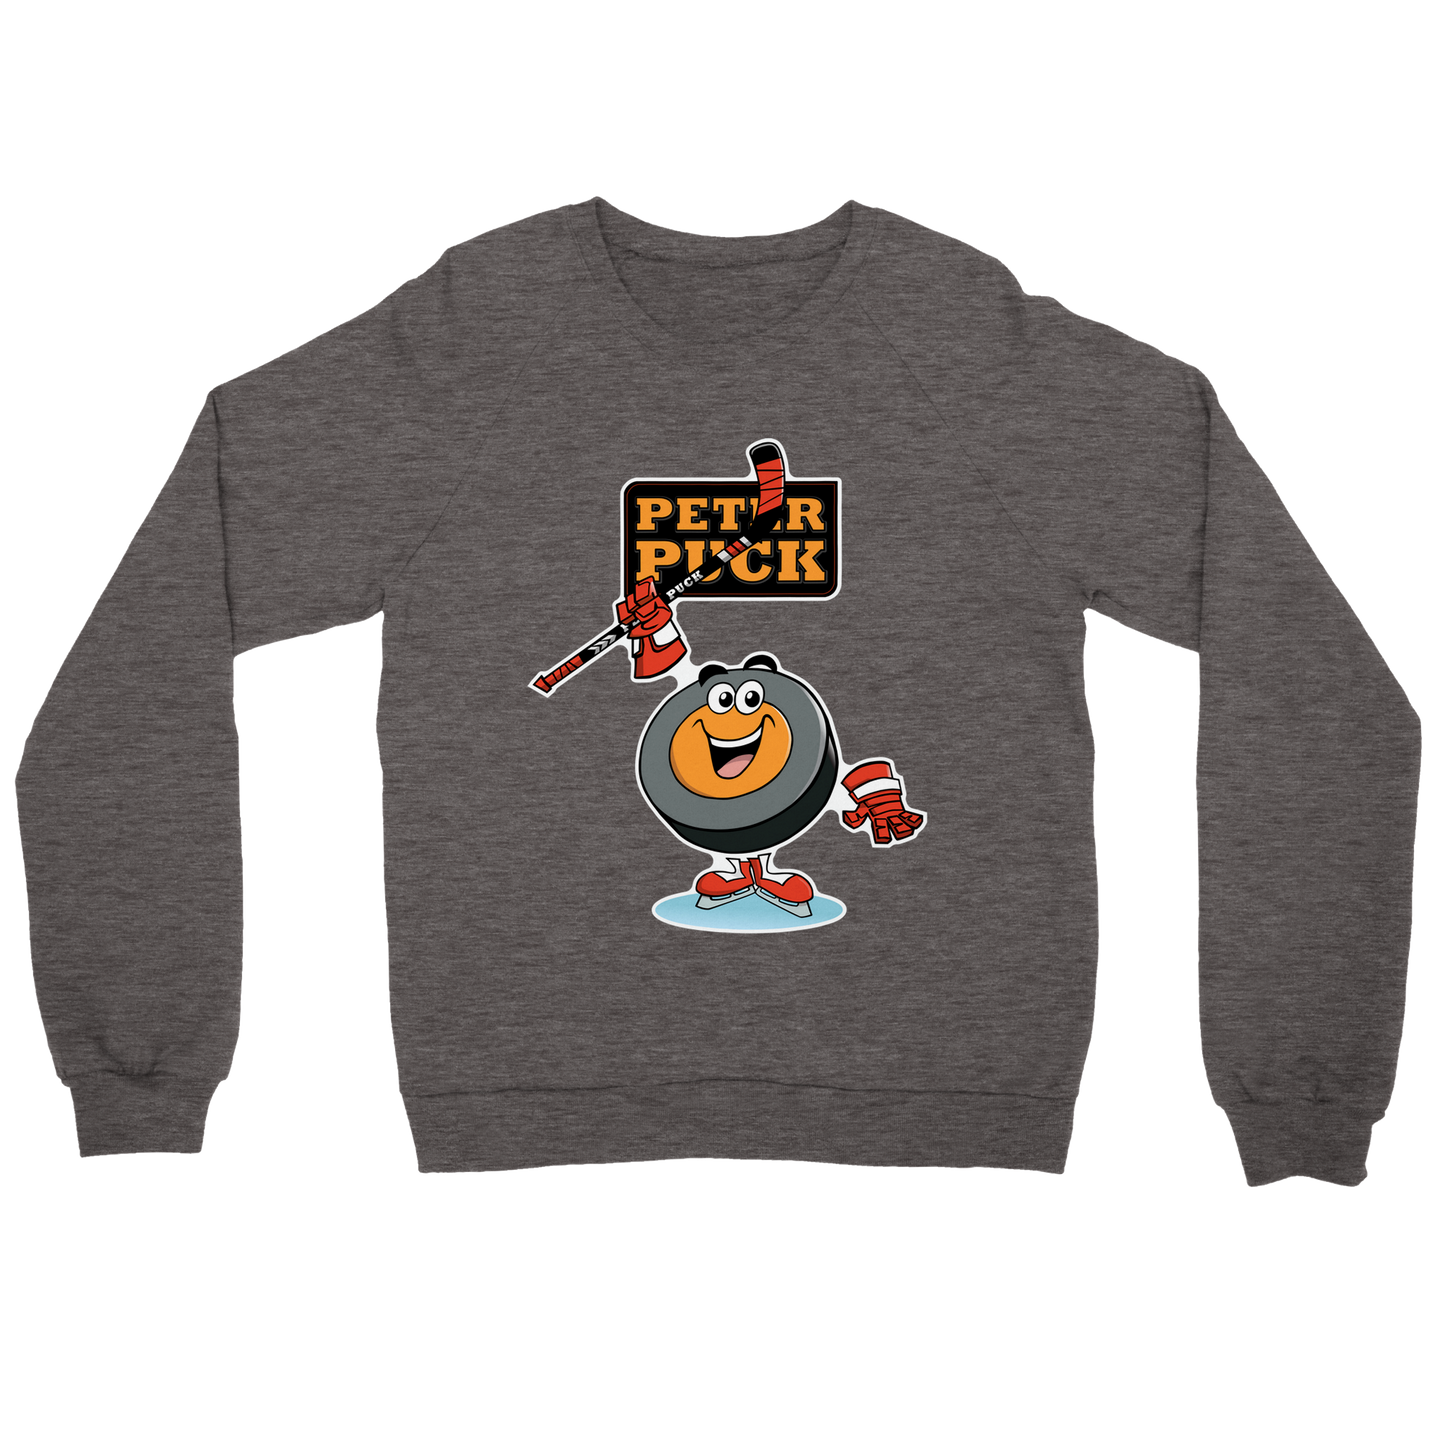 Hey Peter Puck Mens Premium Crewneck Sweatshirt